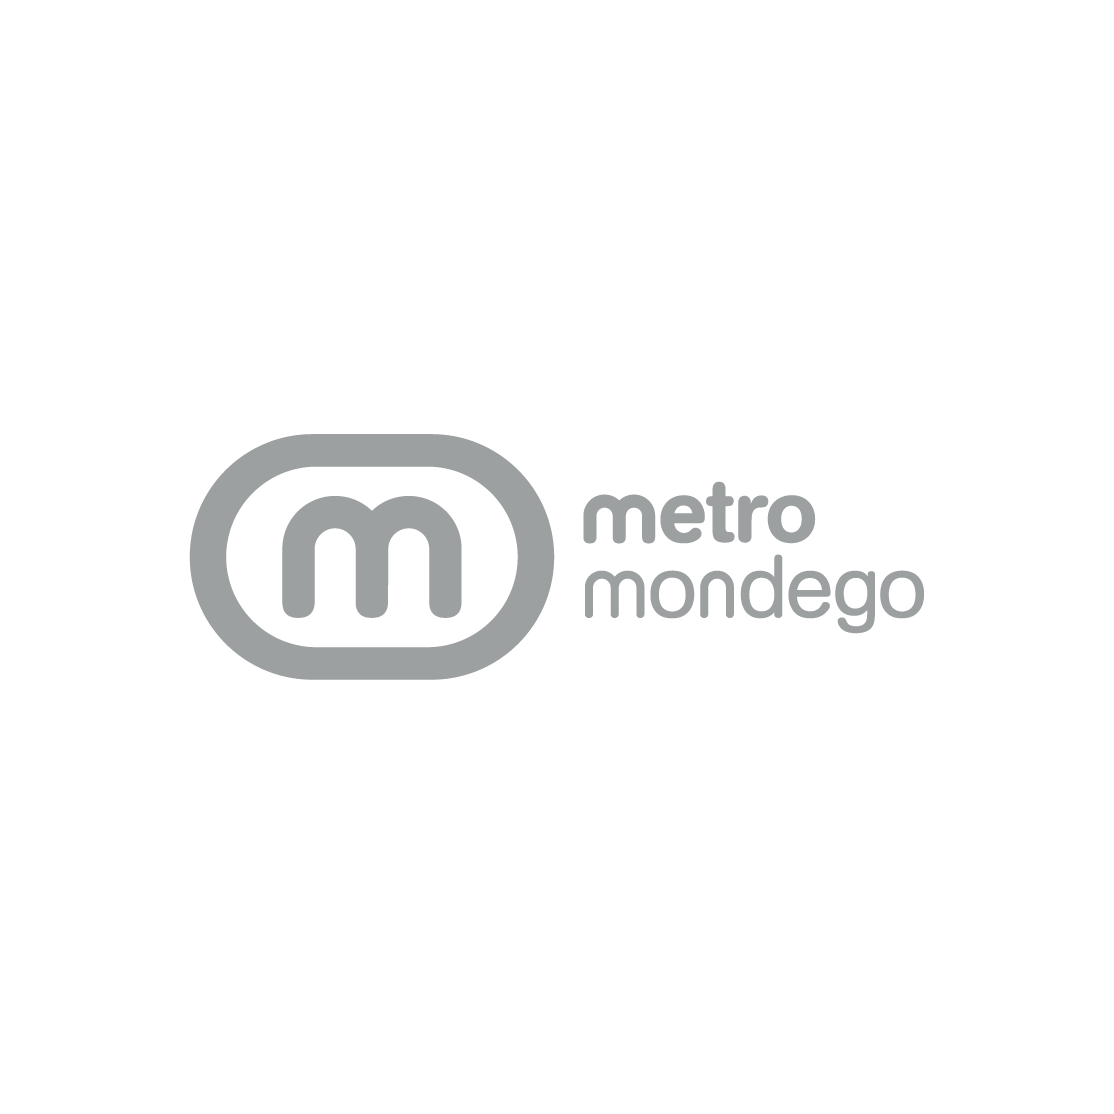 Metro Mondego